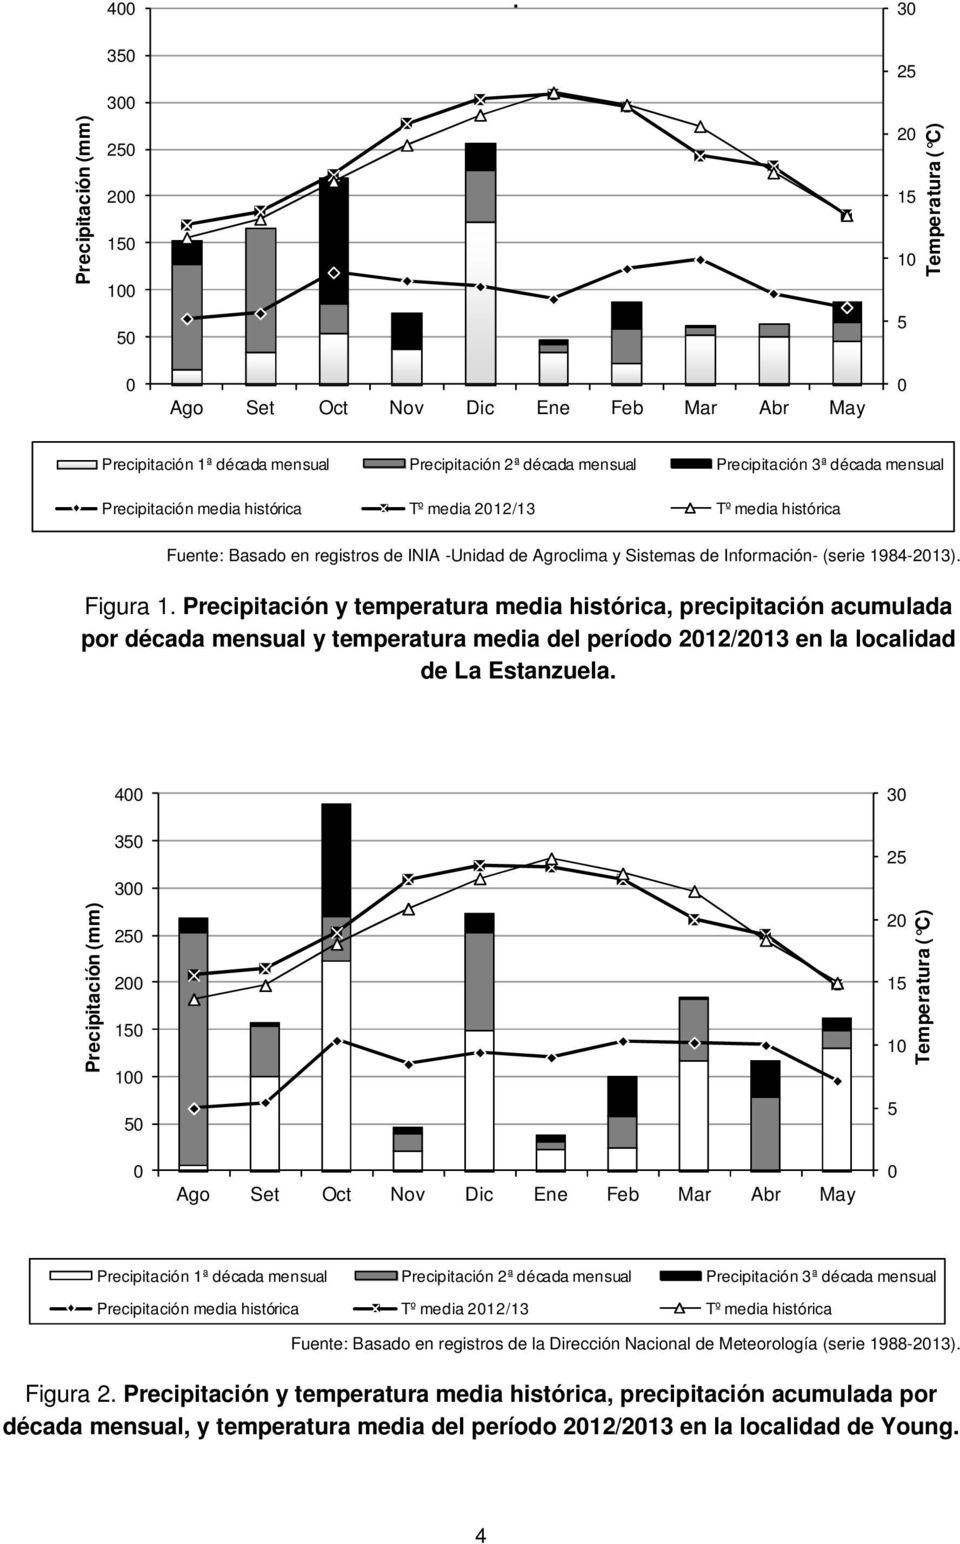 Figura 1. Precipitación y temperatura media histórica, precipitación acumulada por década mensual y temperatura media del período 2012/2013 en la localidad de La Estanzuela.